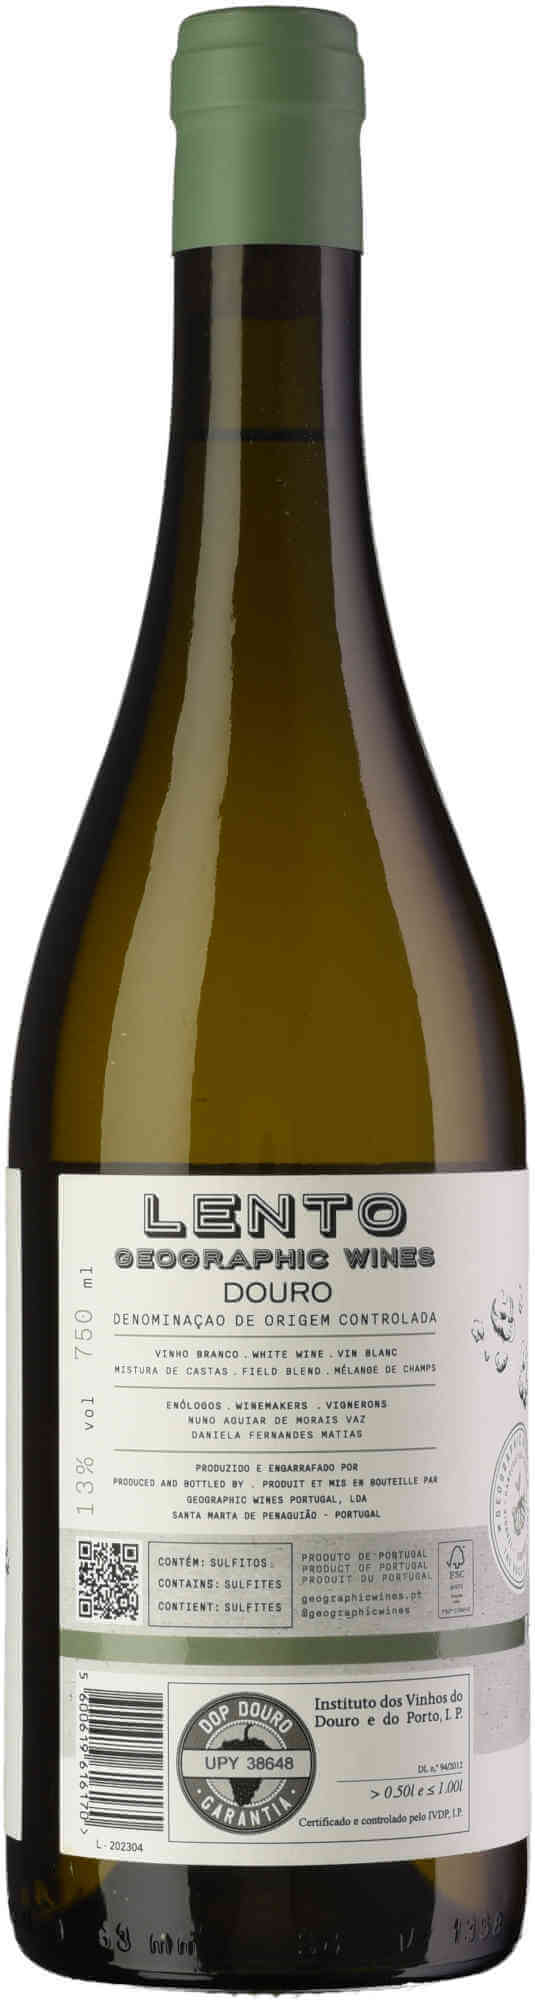 Lento-Old-Vines-Branco-back